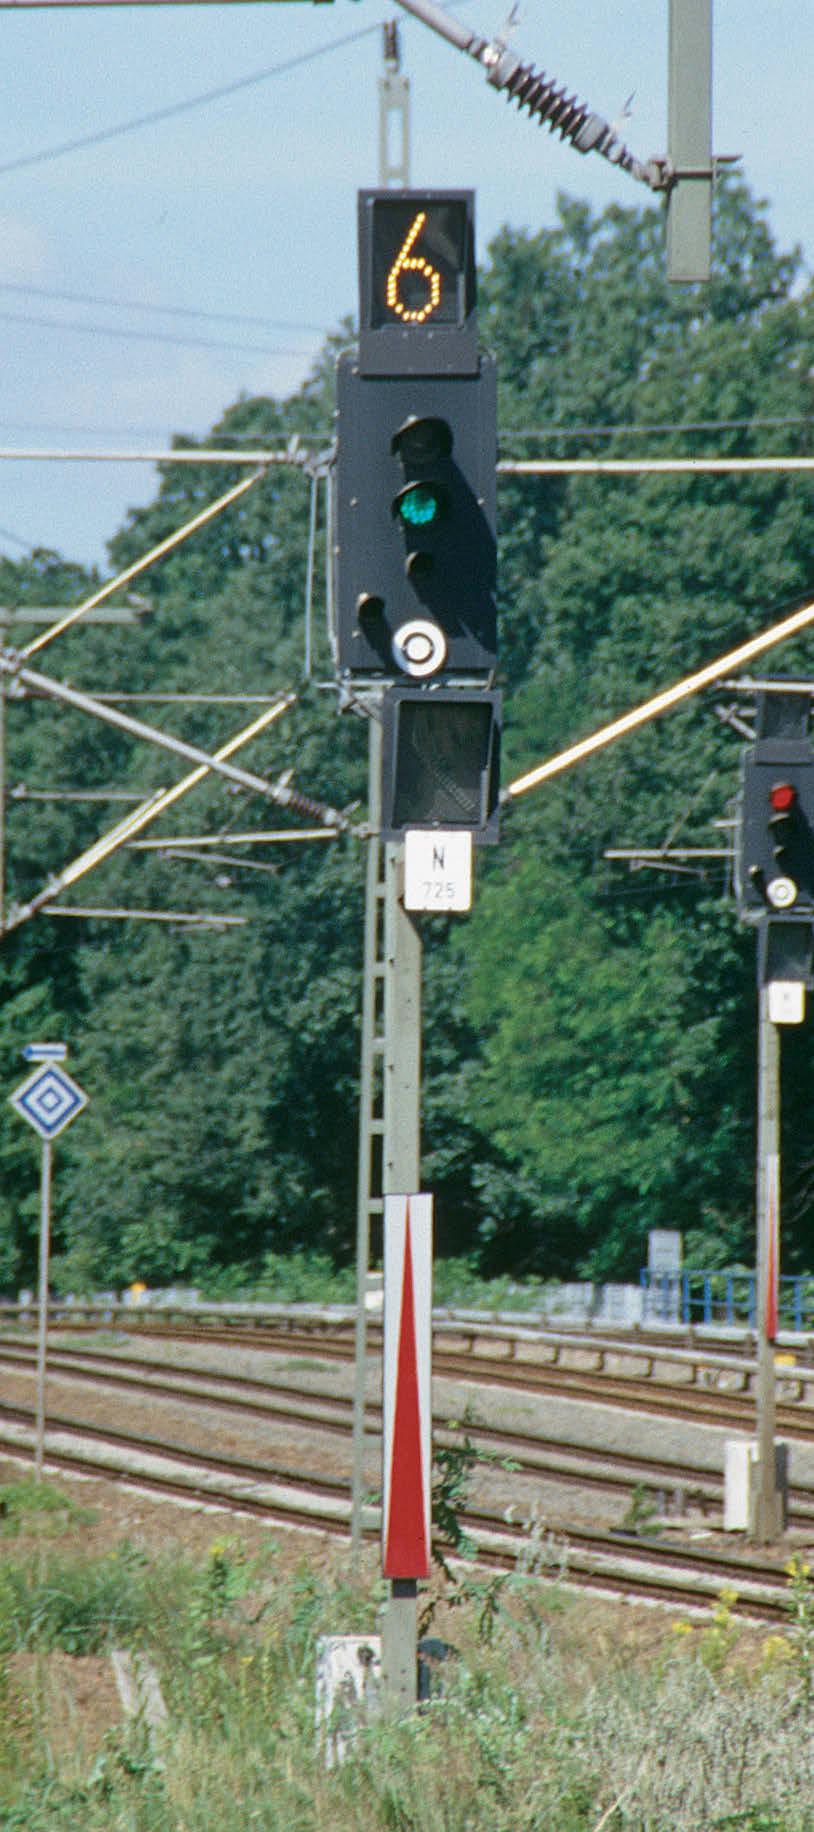 Ist das Lichthauptsignal mit einem weiß-gelbweiß-gelb-weißen Mastschild versehen und zeigt es Halt oder ist es gestört, dürfen Züge nach dem Anhalten ohne Zustimmung vorbeifahren, wenn die